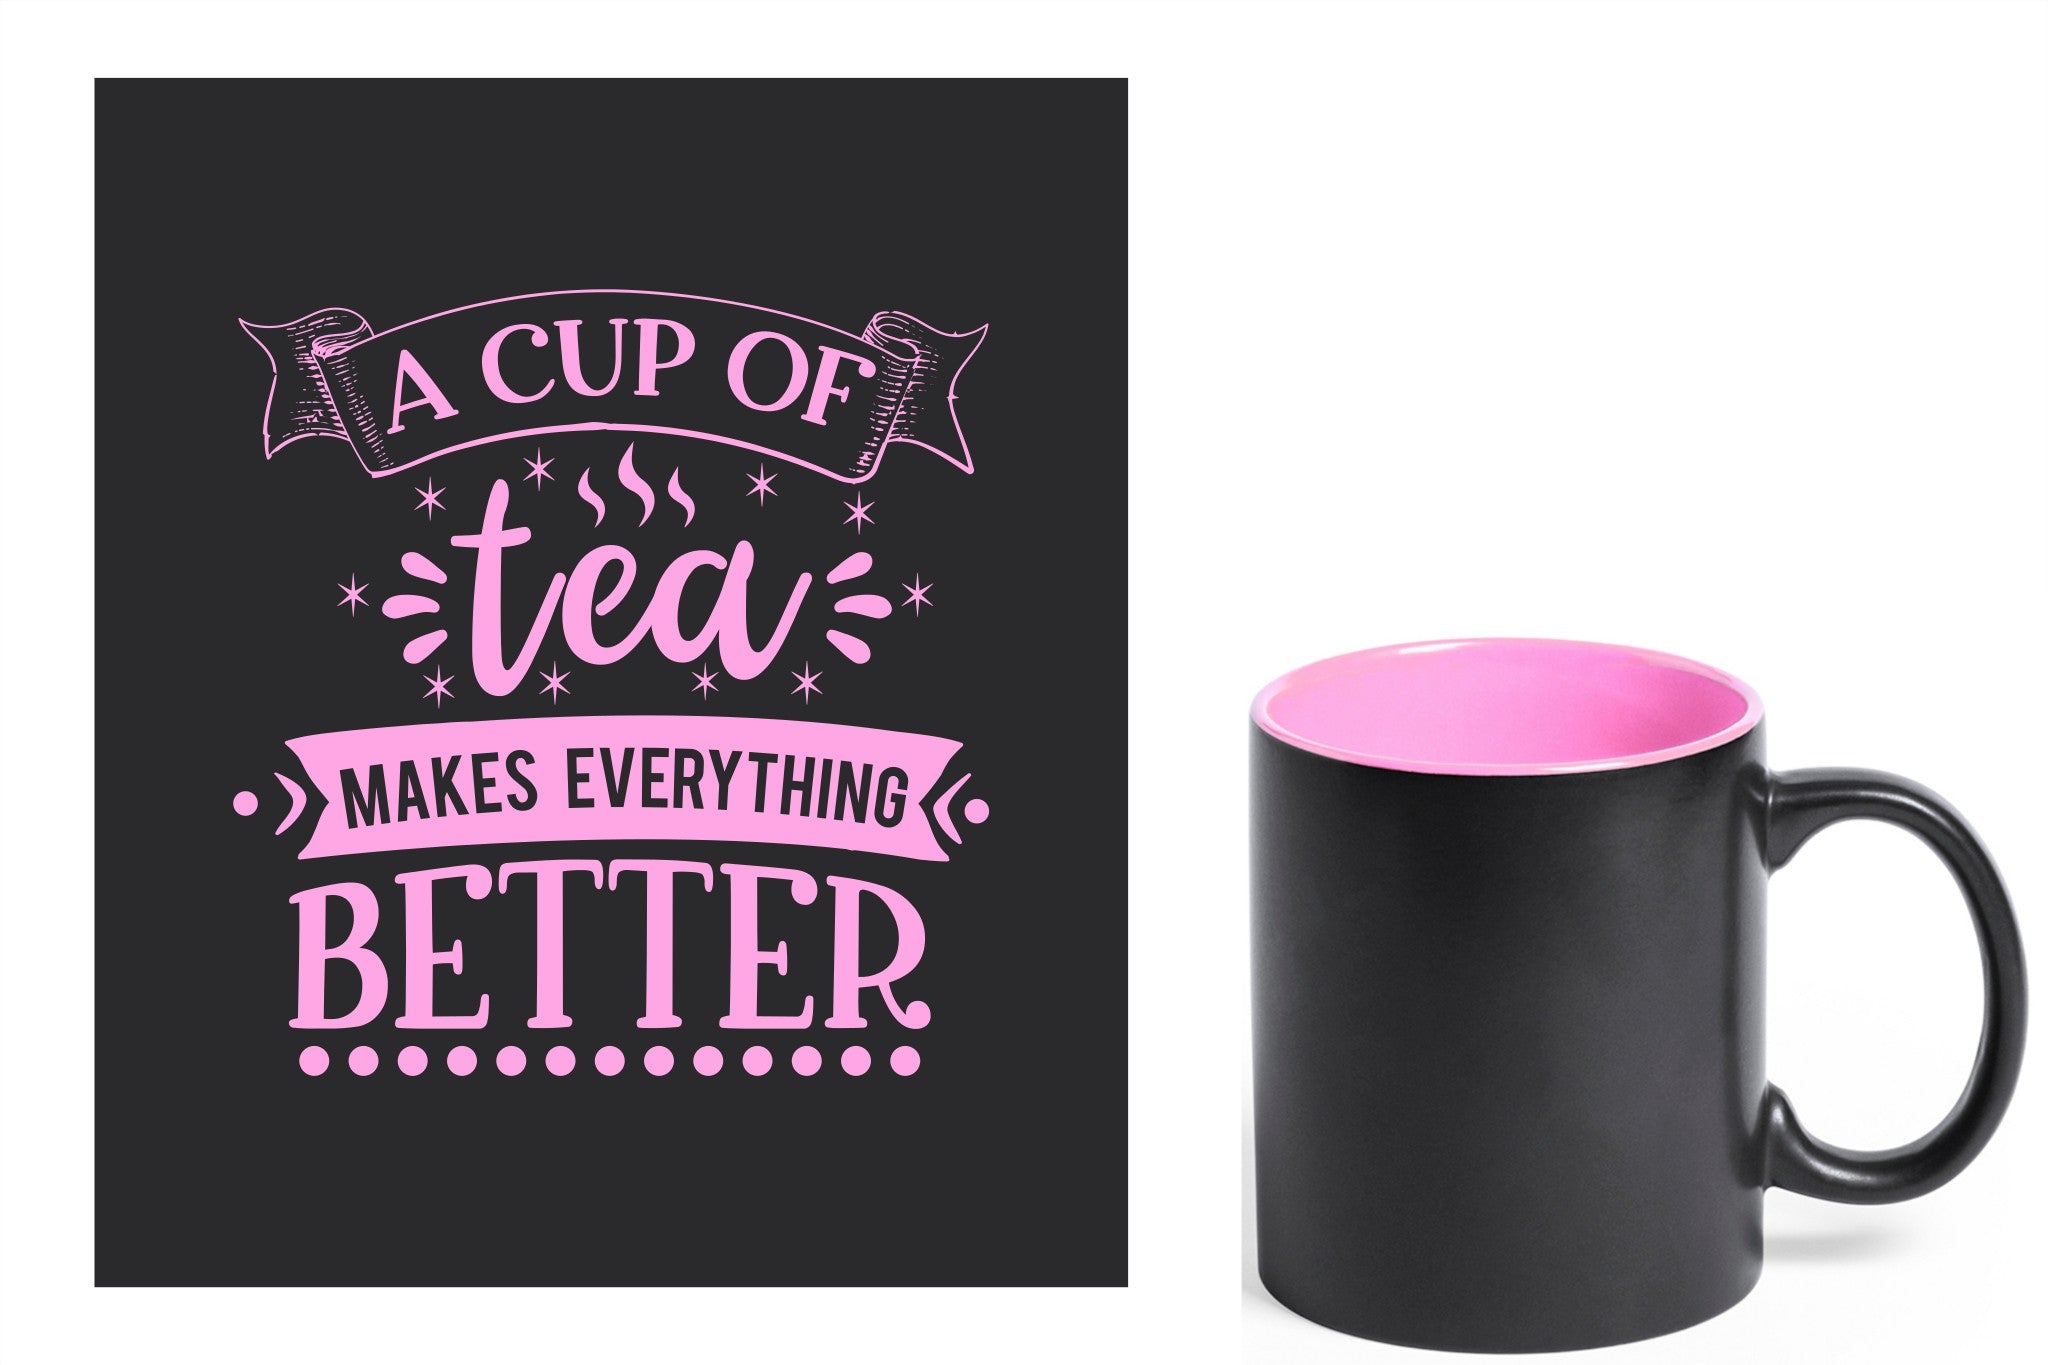 zwarte keramische mok met roze gravure  'A cup of tea makes everything better'.